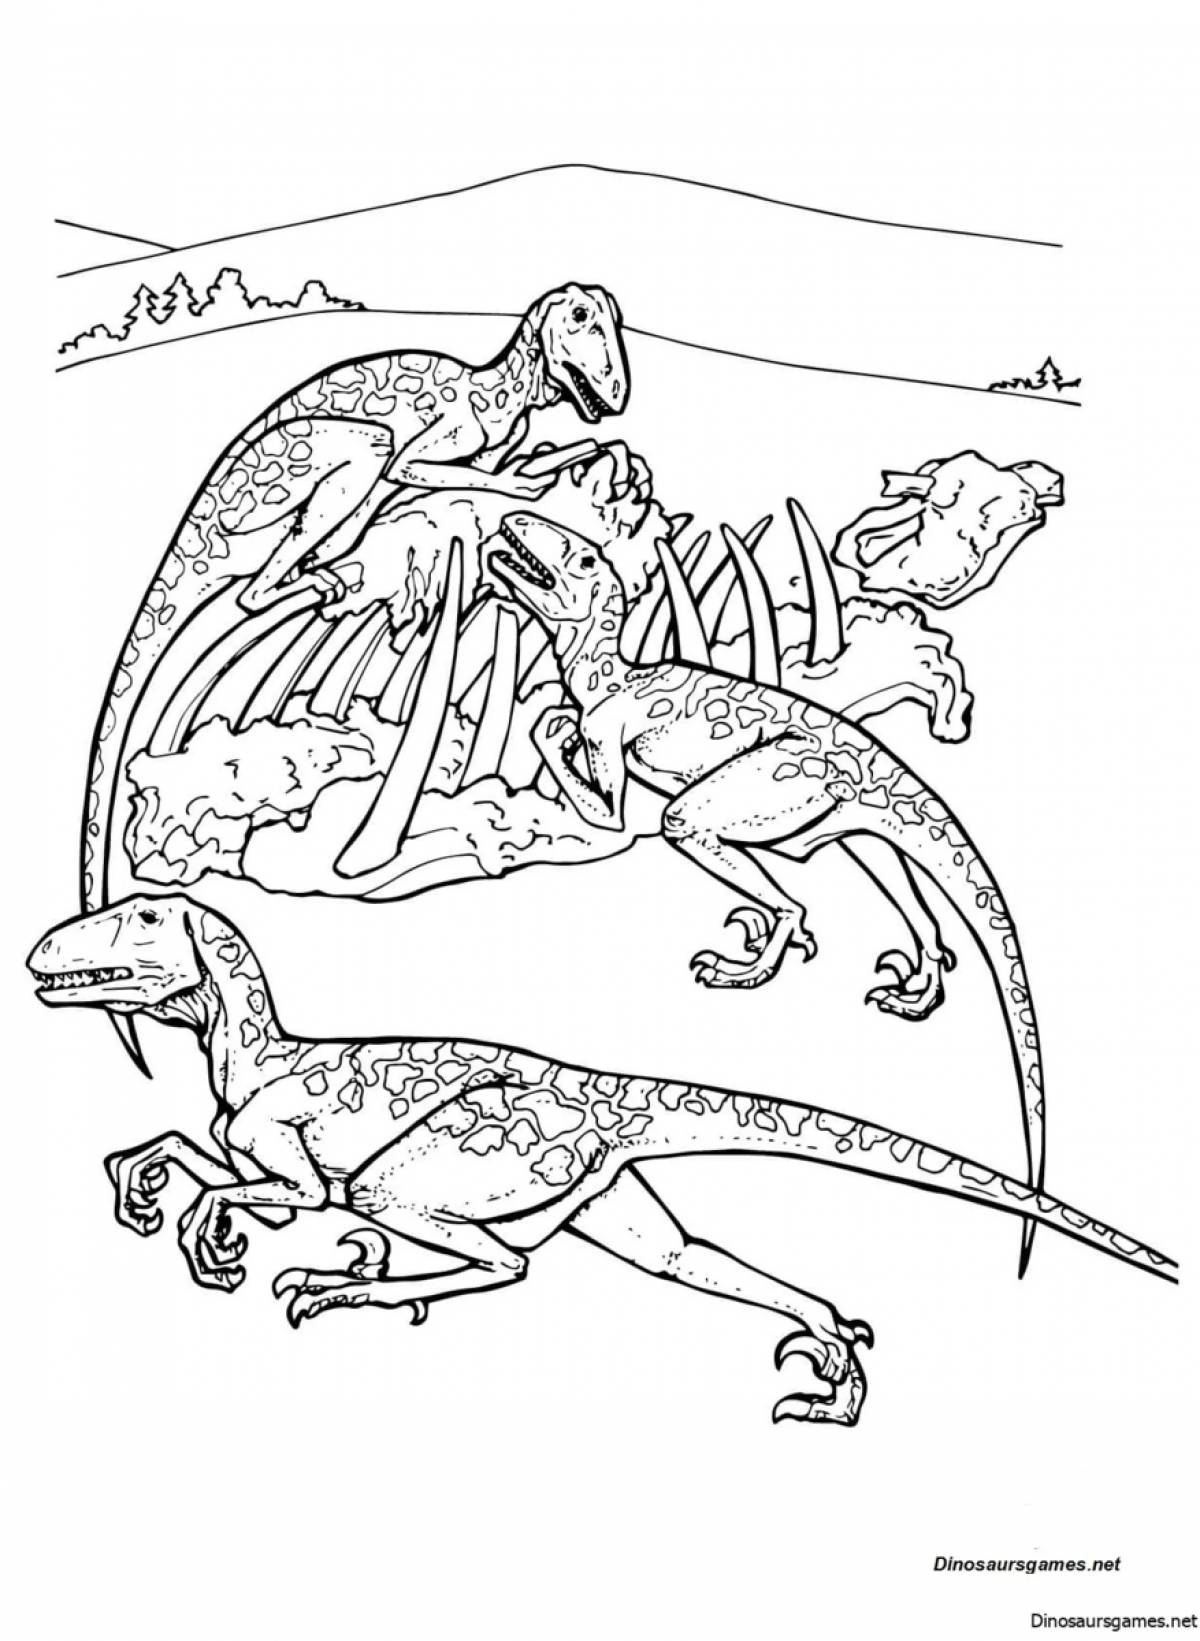 Заманчивая иллюстрация битвы динозавров